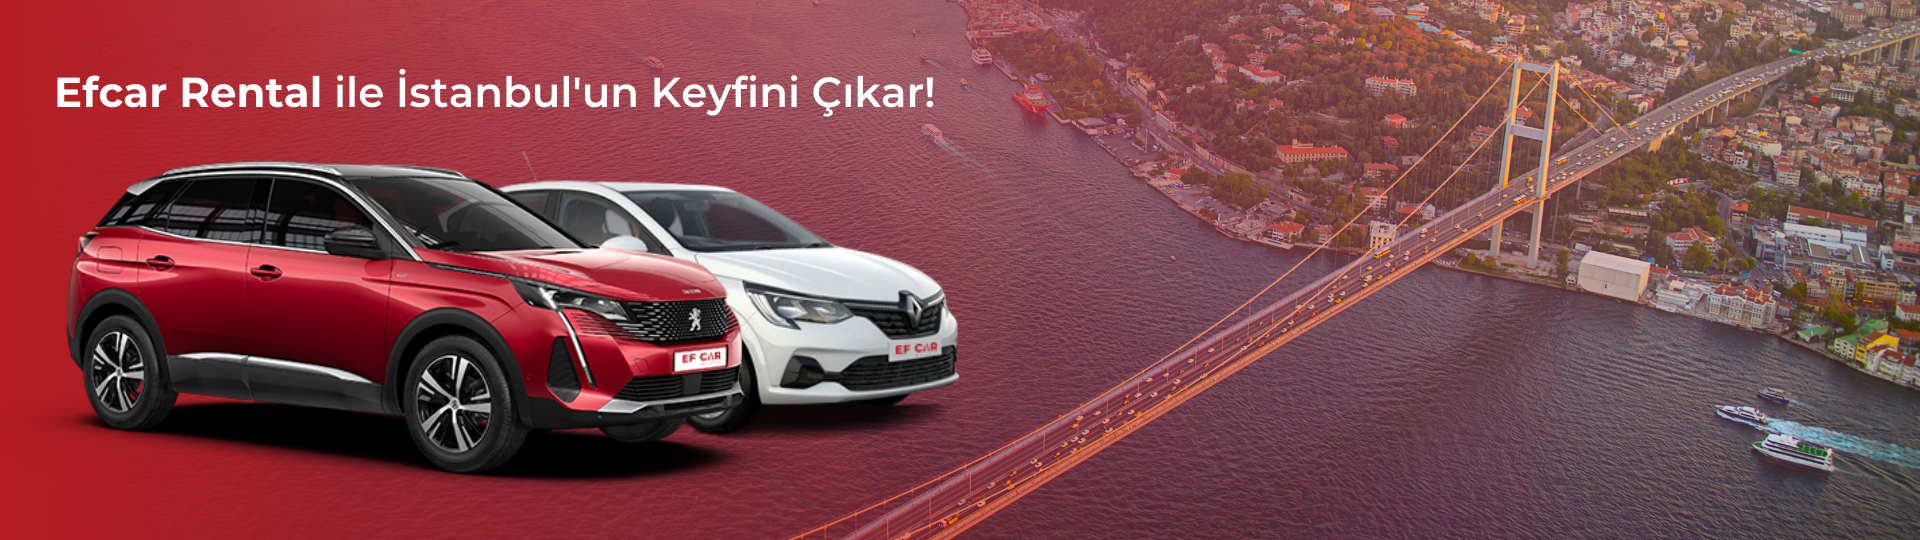 Efcar Rental ile İstanbul'un Keyfini Çıkar!